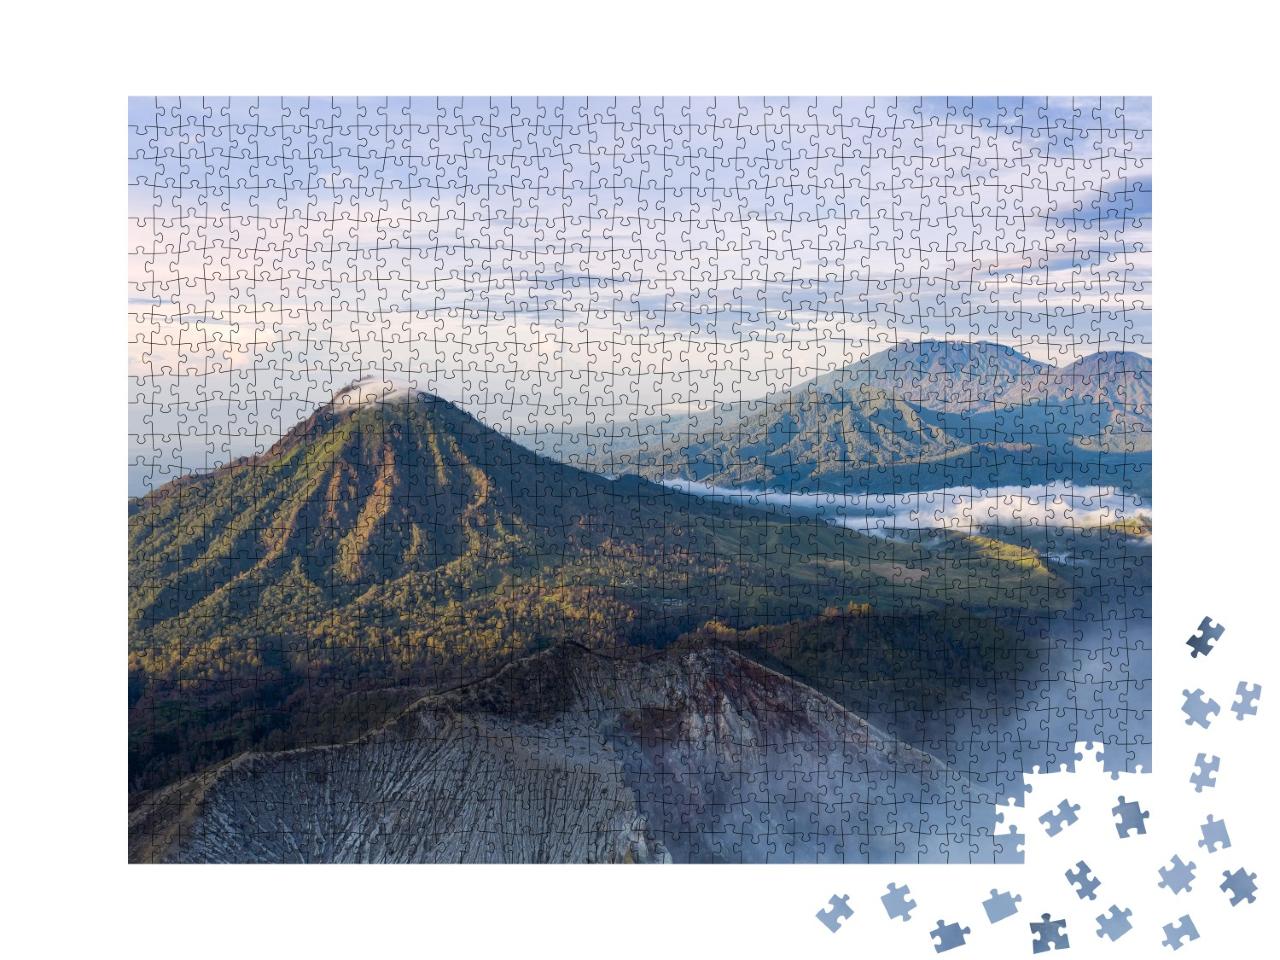 Puzzle de 1000 pièces « Chaîne de montagnes au lever du soleil, Java Est, Indonésie »